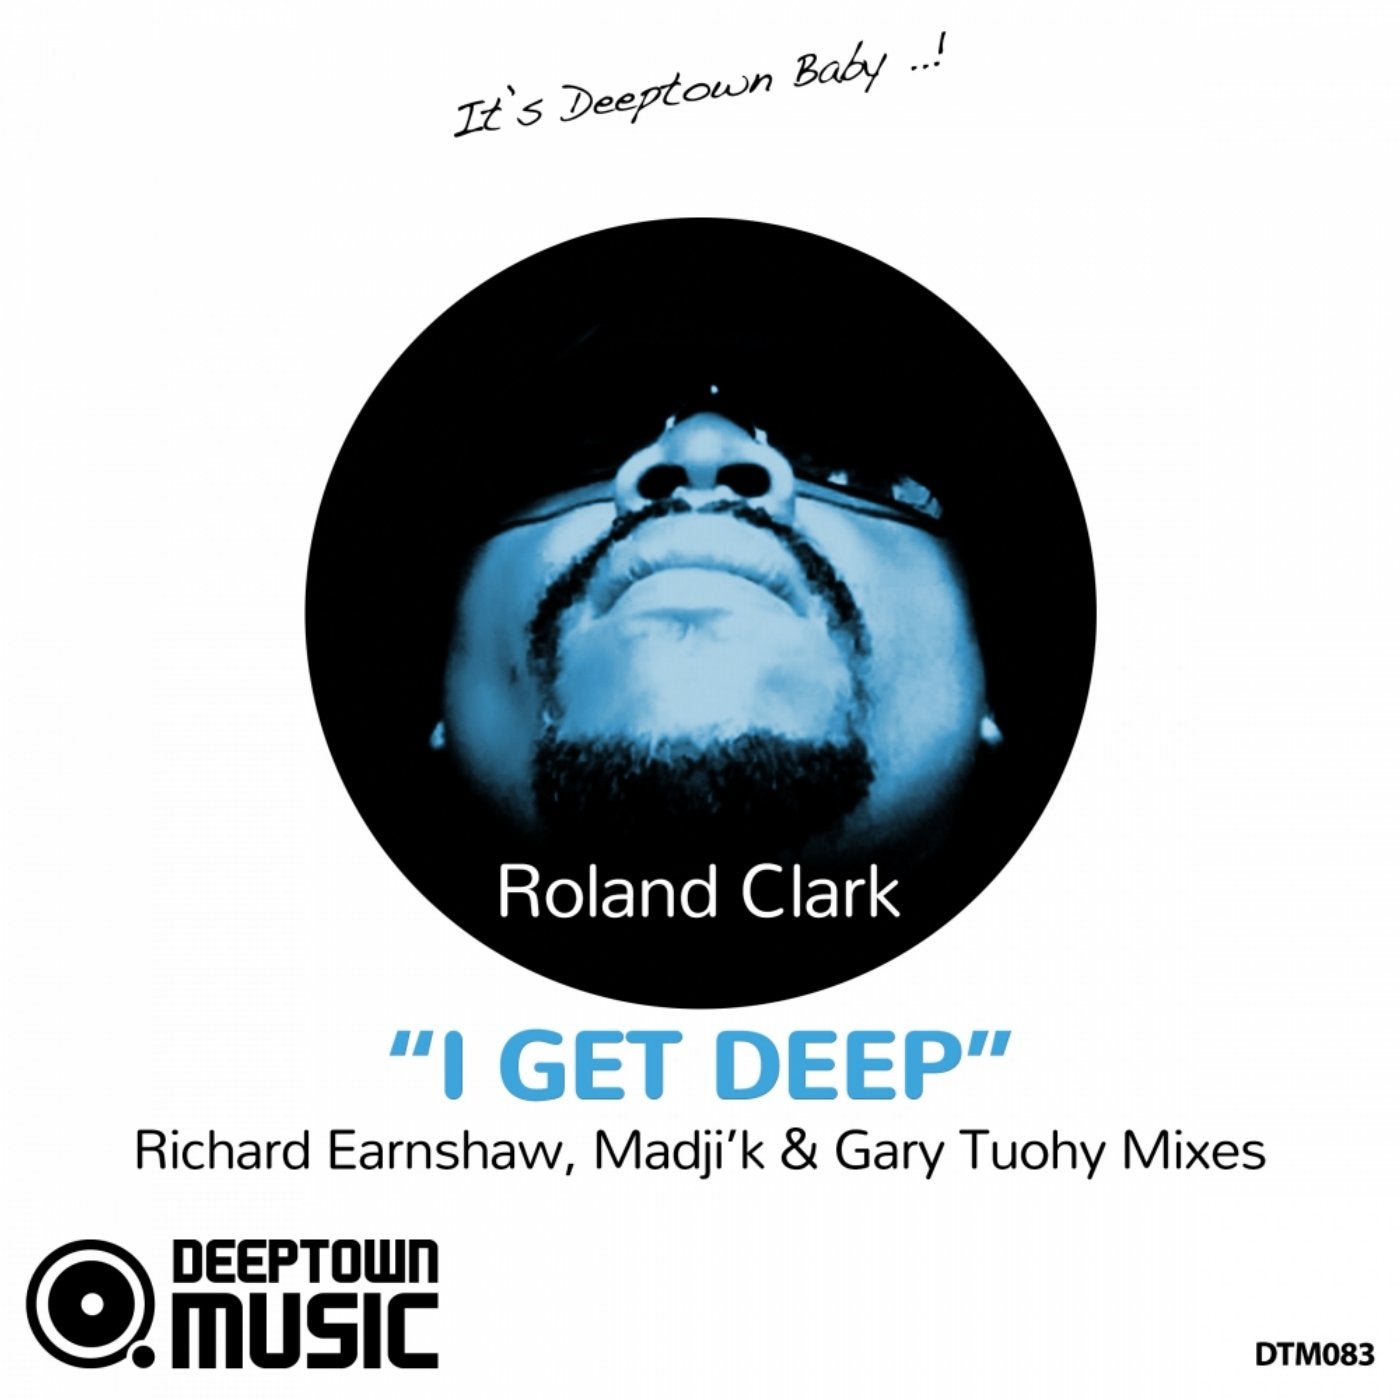 I Get Deep (Richard Earnshaw, Madjik & Gary Tuohy Mixes)